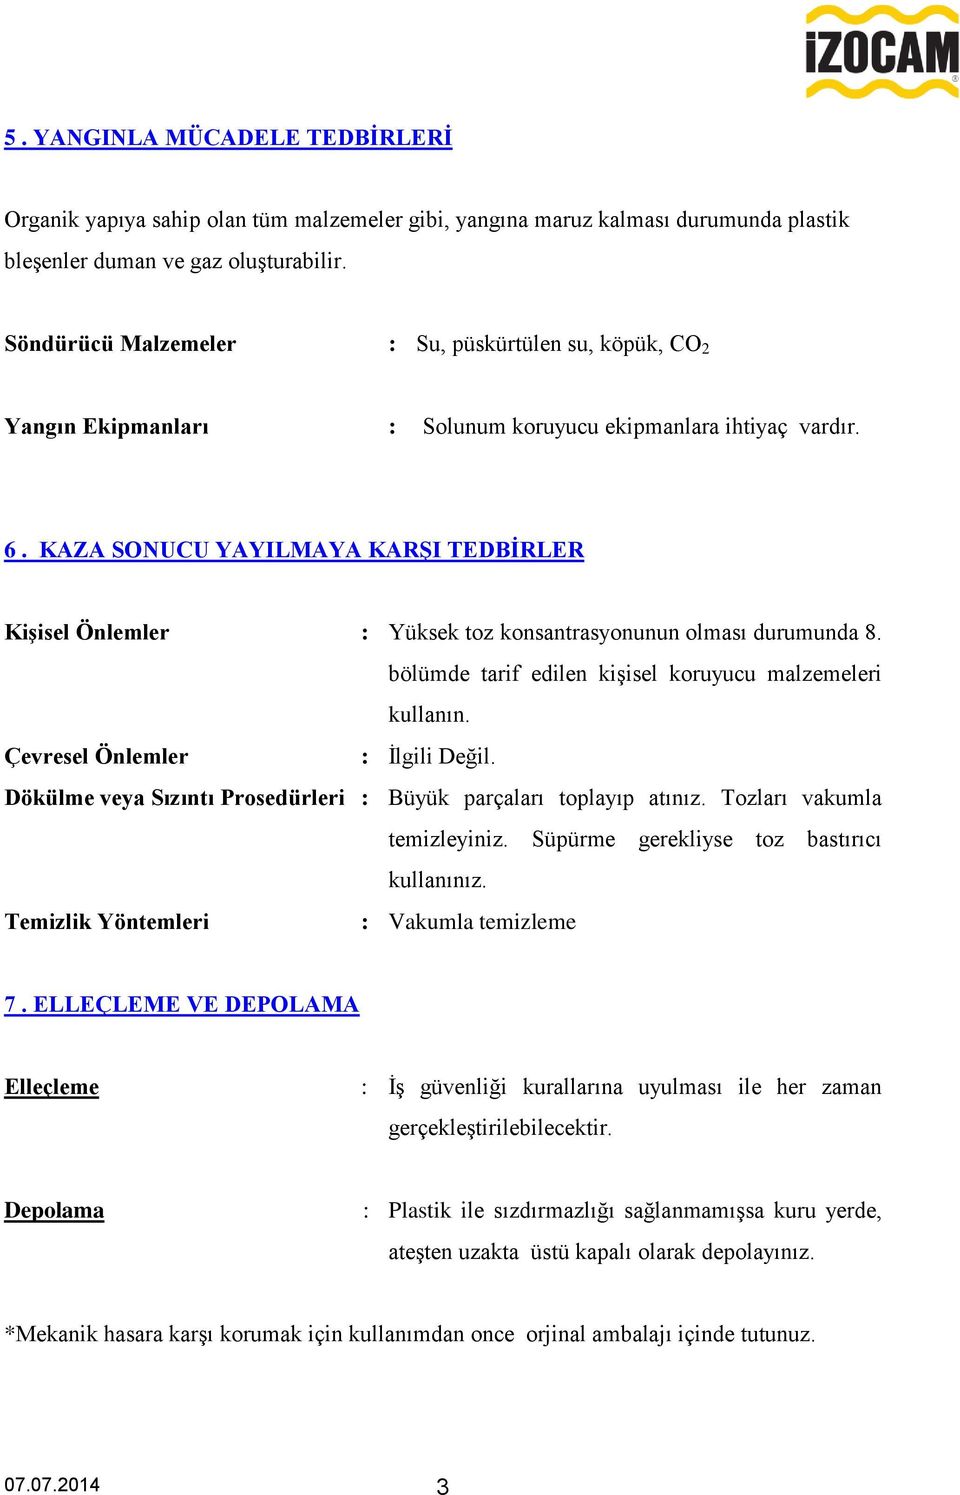 KAZA SONUCU YAYILMAYA KARġI TEDBĠRLER KiĢisel Önlemler : Yüksek toz konsantrasyonunun olması durumunda 8. bölümde tarif edilen kişisel koruyucu malzemeleri kullanın.